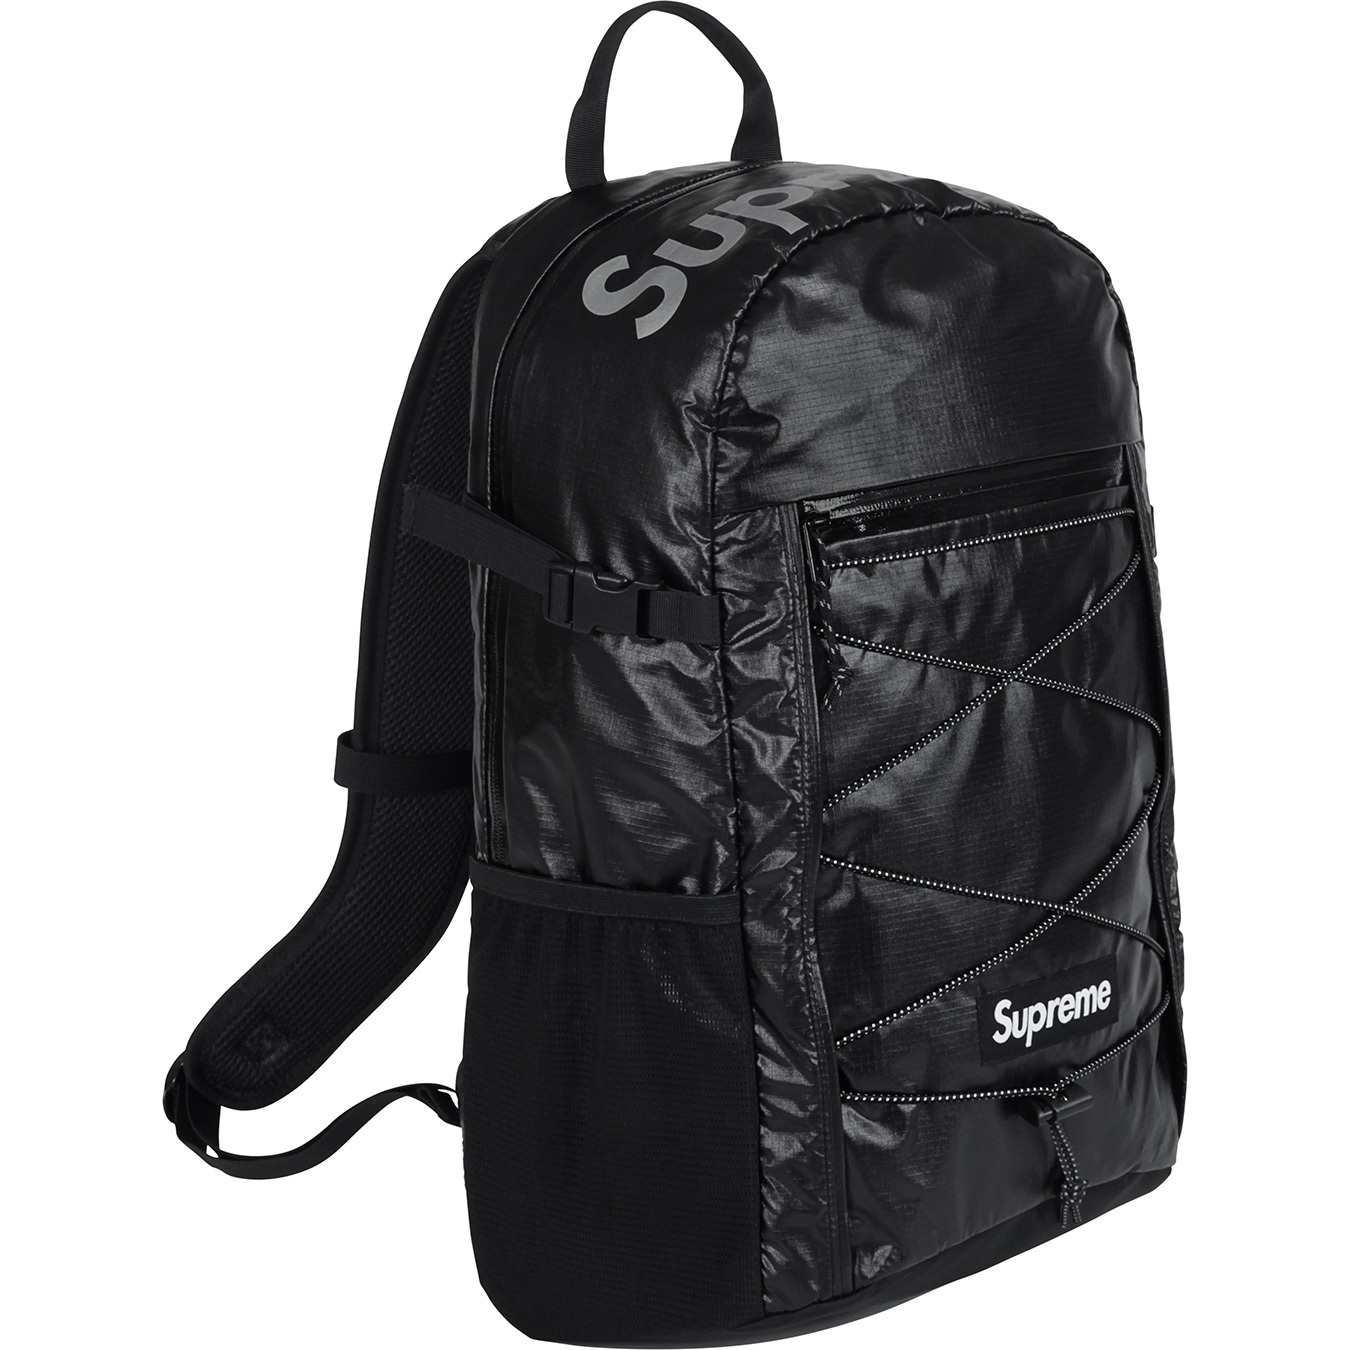 Backpack - spring summer 2016 - Supreme